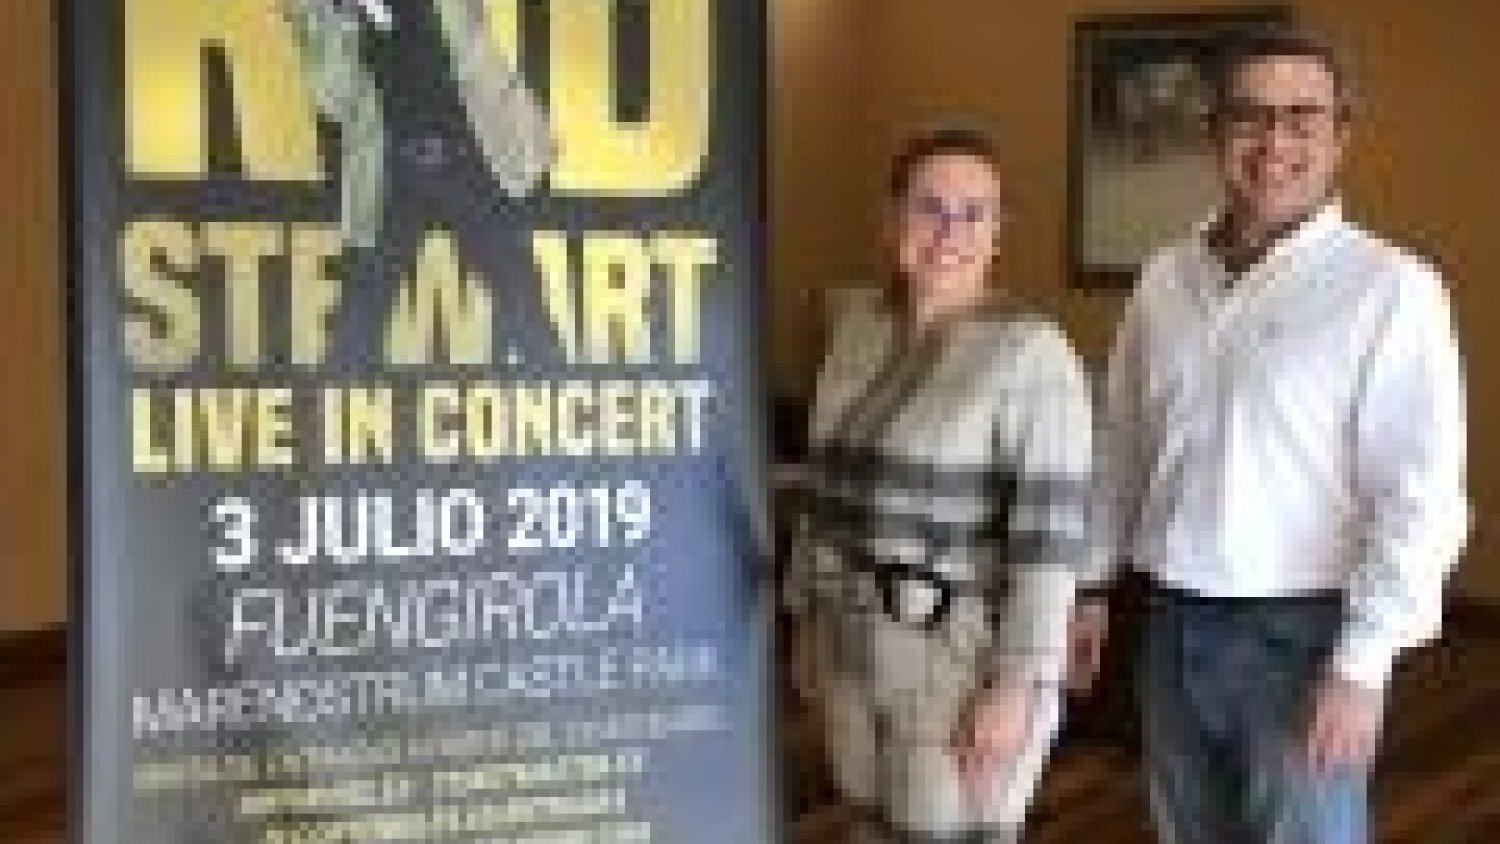 La leyenda viva Rod Stewart con su “Live in concert” llega el 3 de julio al Manenostrum 2019